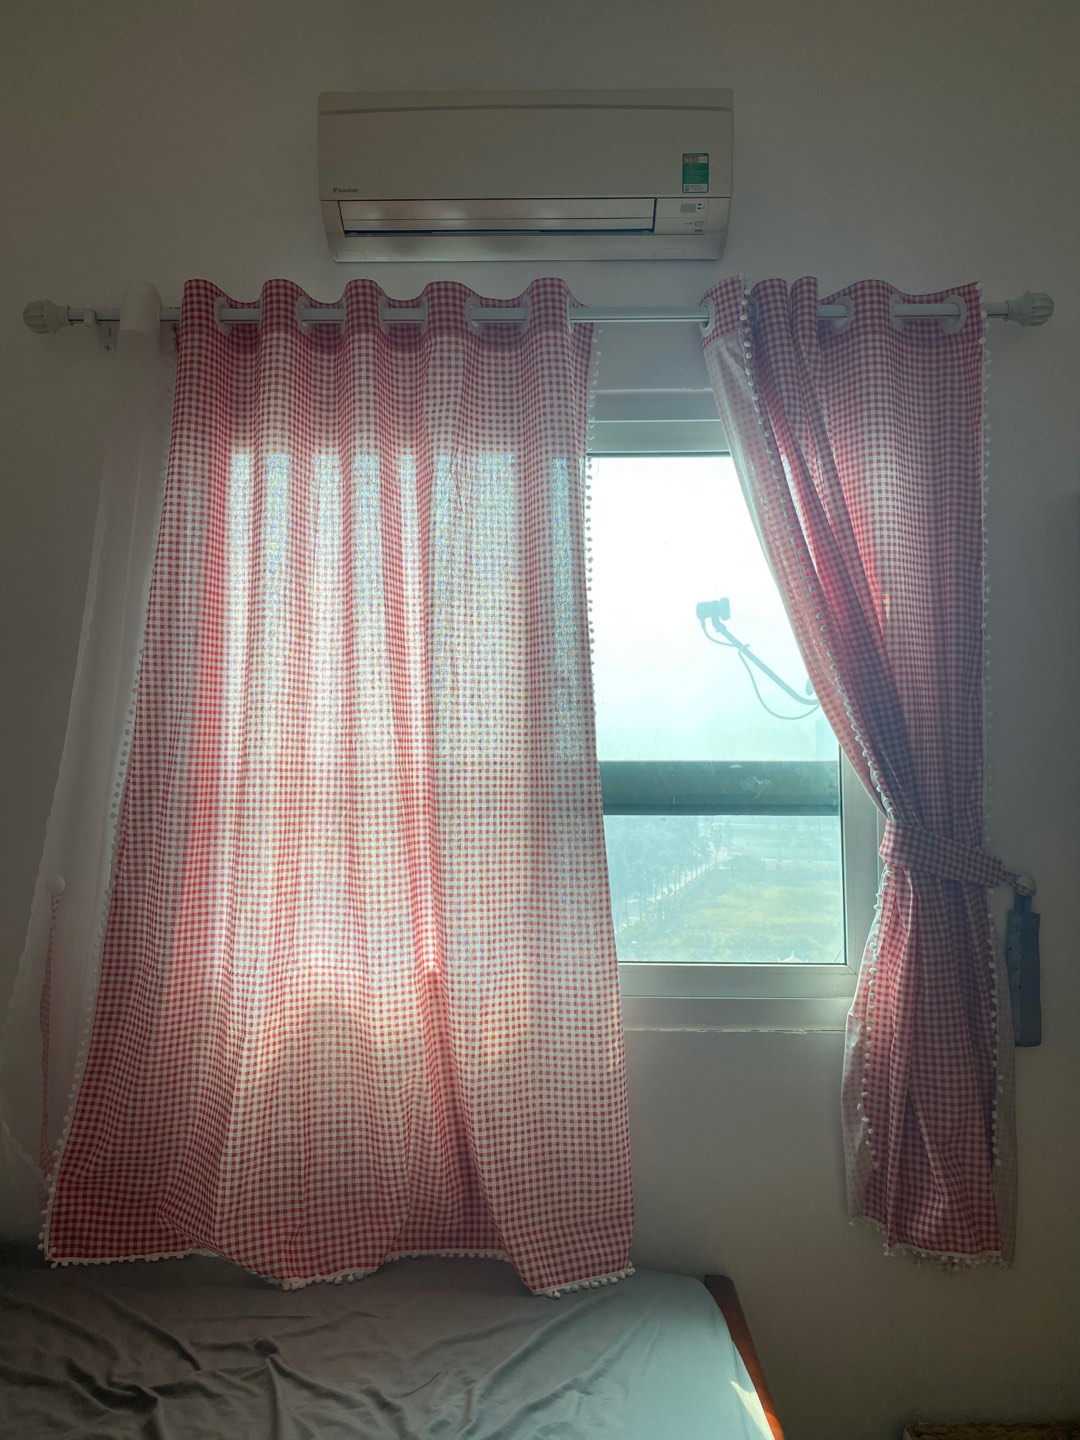 Rèm cửa sổ chống nắng decor MARYTEXCO trang trí nhà cửa, làm dịu nhẹ ánh sáng tự nhiên, rèm ore hoàn thiện tặng kèm dây buộc rèm vintage, viền tua rua trắng - họa tiết CARO ĐỎ R-A03